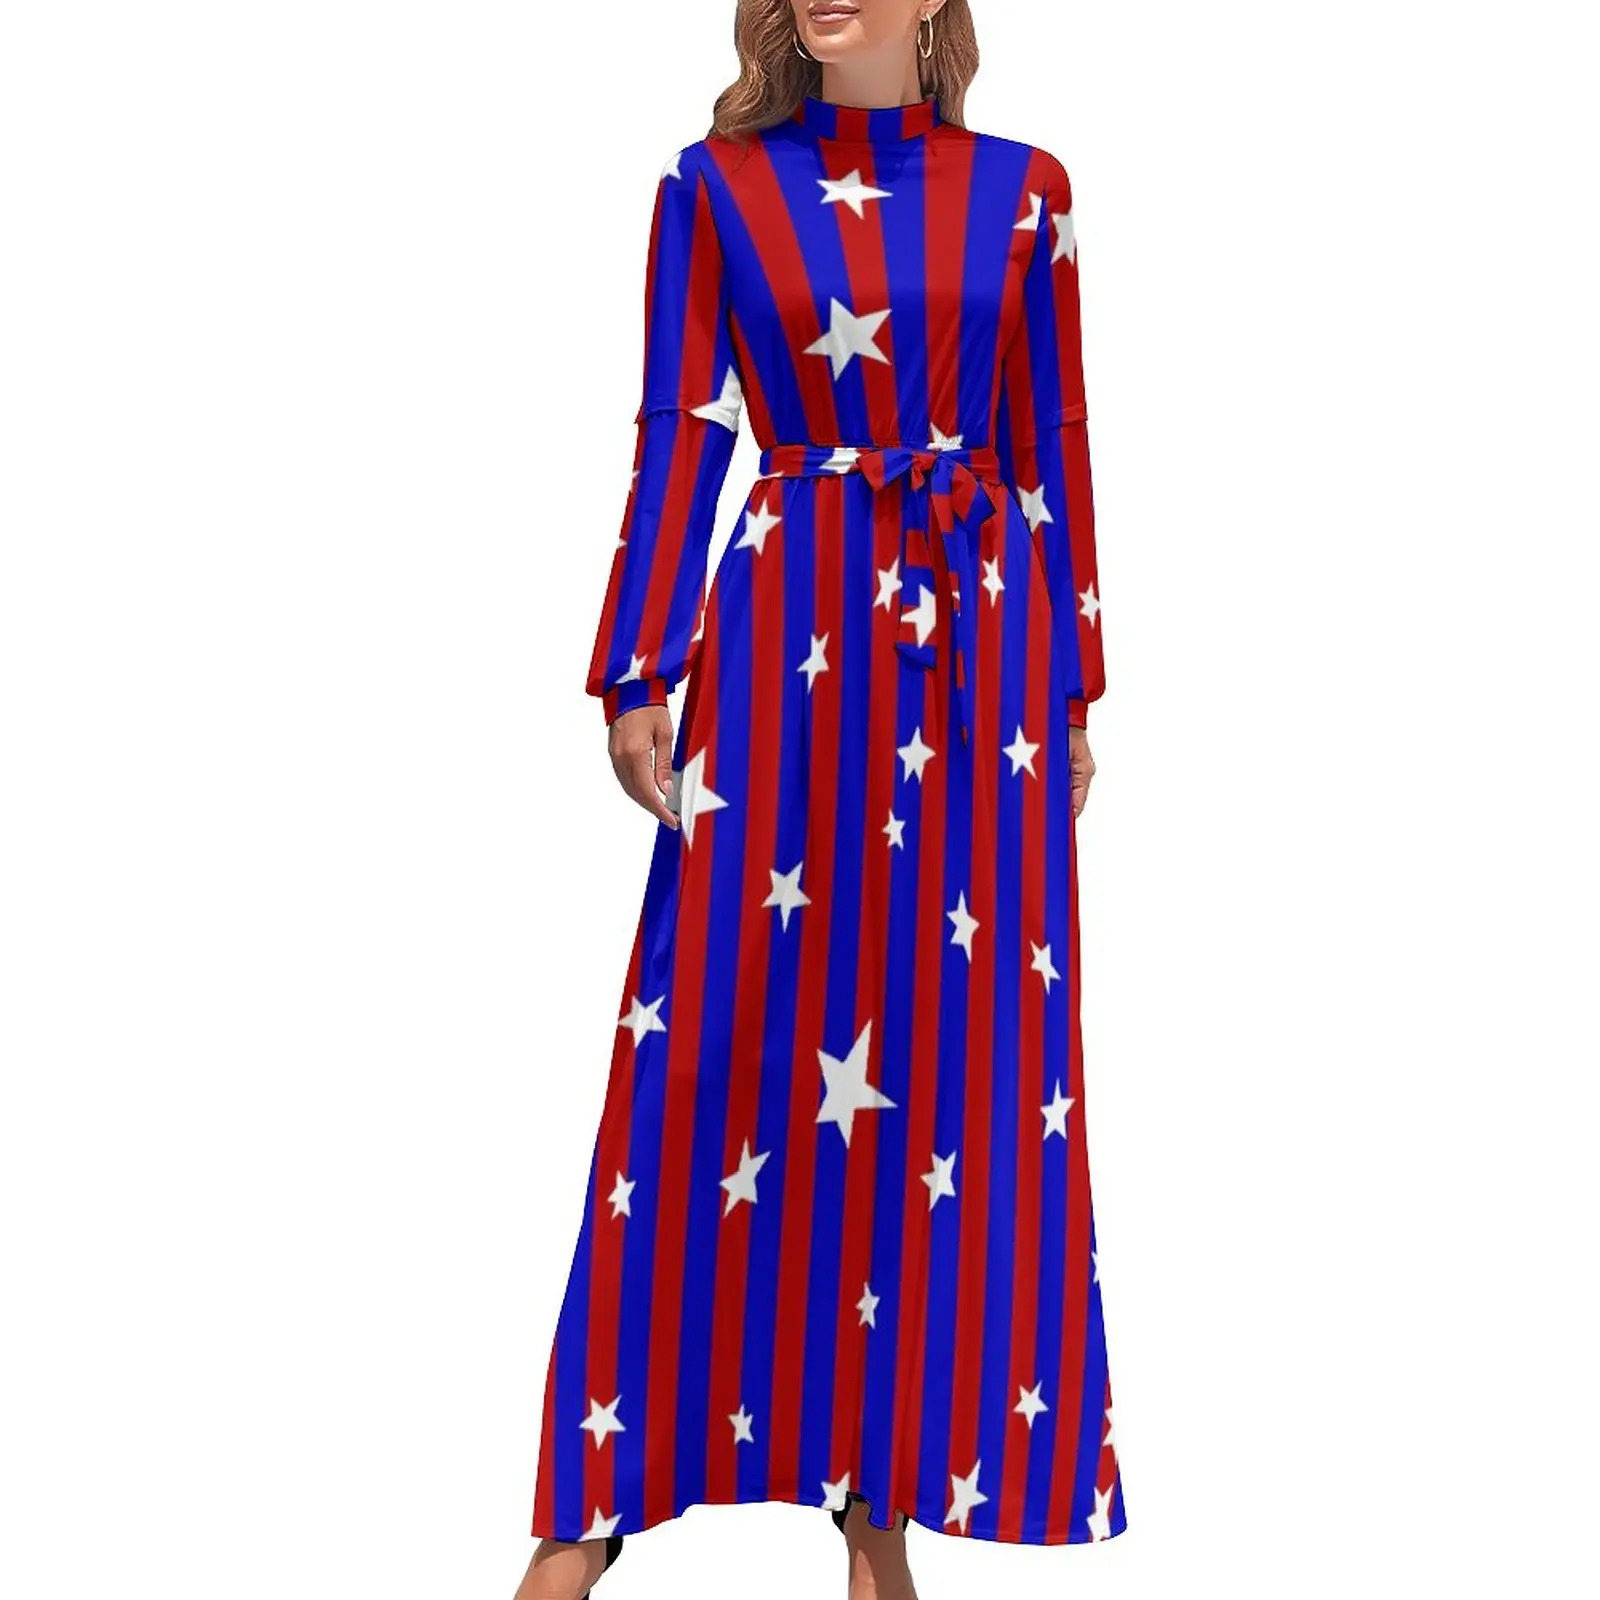 

Сине-красное платье в полоску, Стильные пляжные платья с принтом звезд, женское длинное платье макси с длинным рукавом и высокой талией